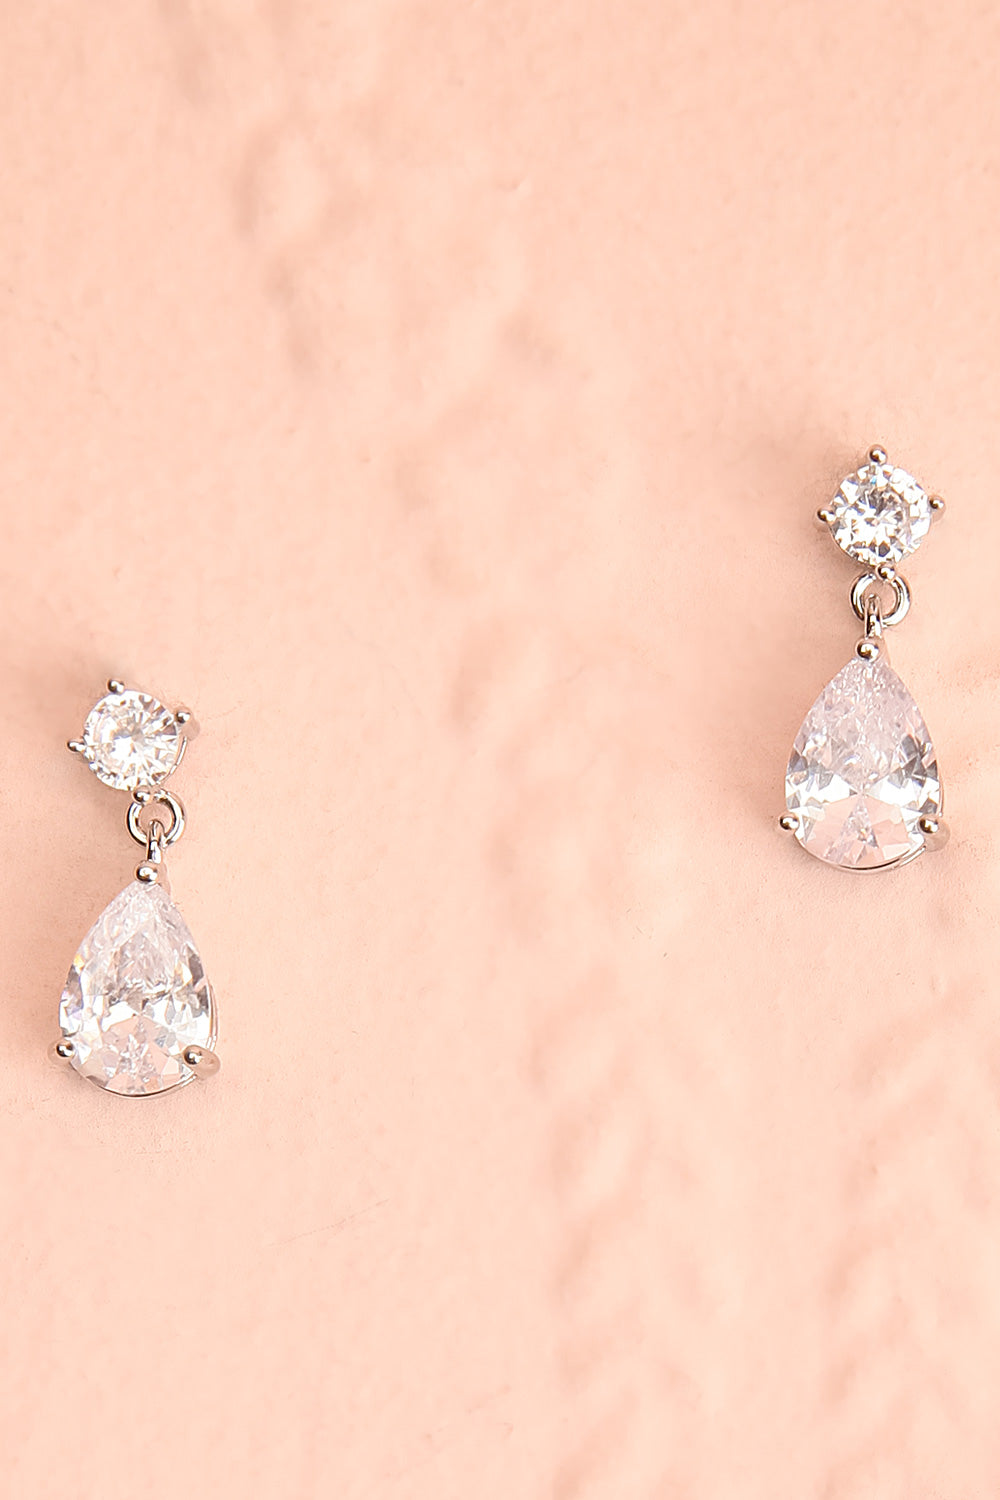 Lorna Luft Crystal Earrings & Necklace Set | Boutique 1861 earrings 